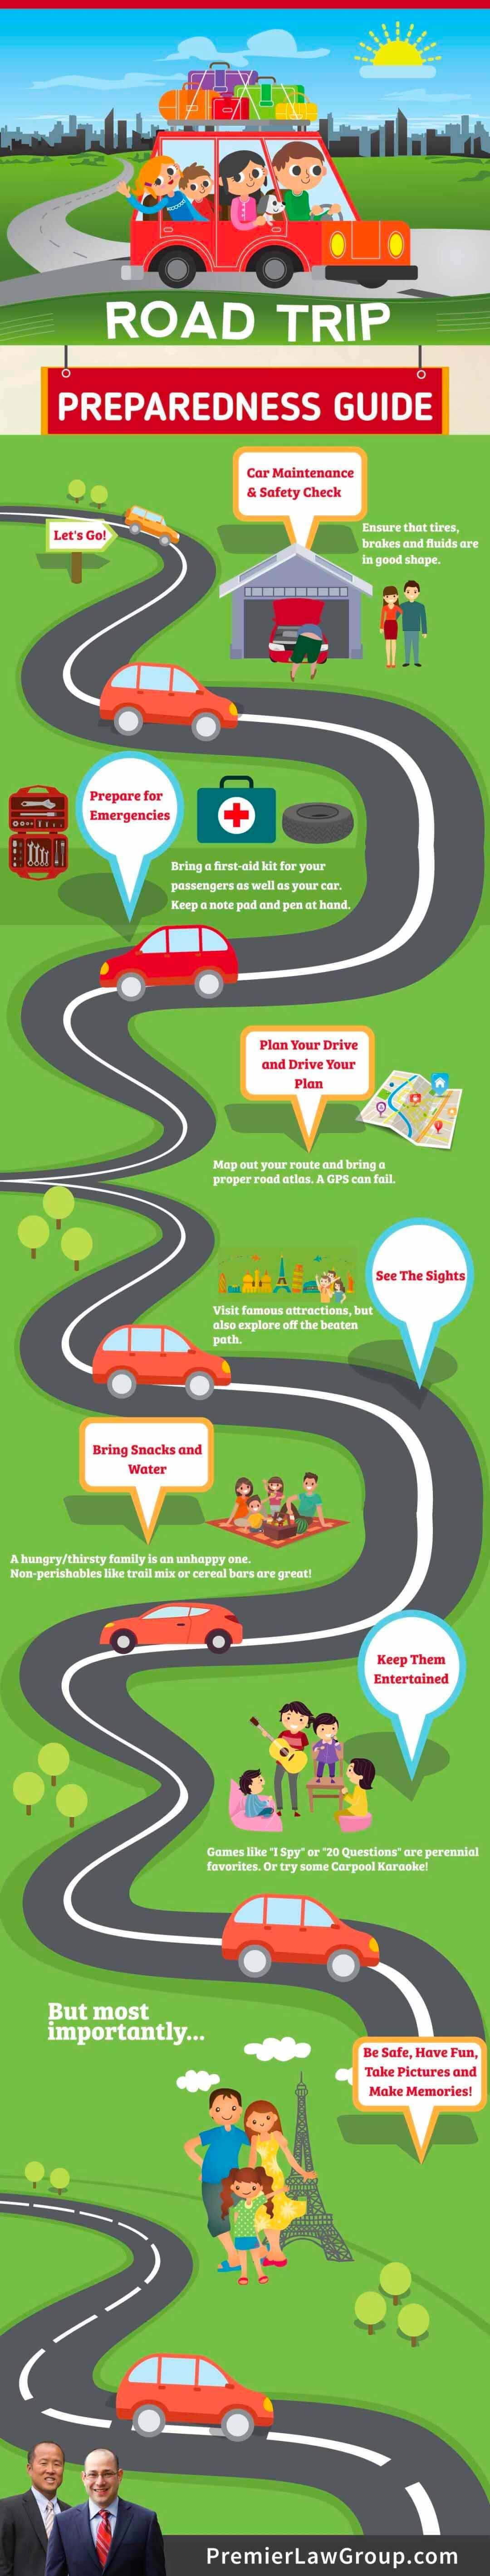 Road trip preparedness guide infographic